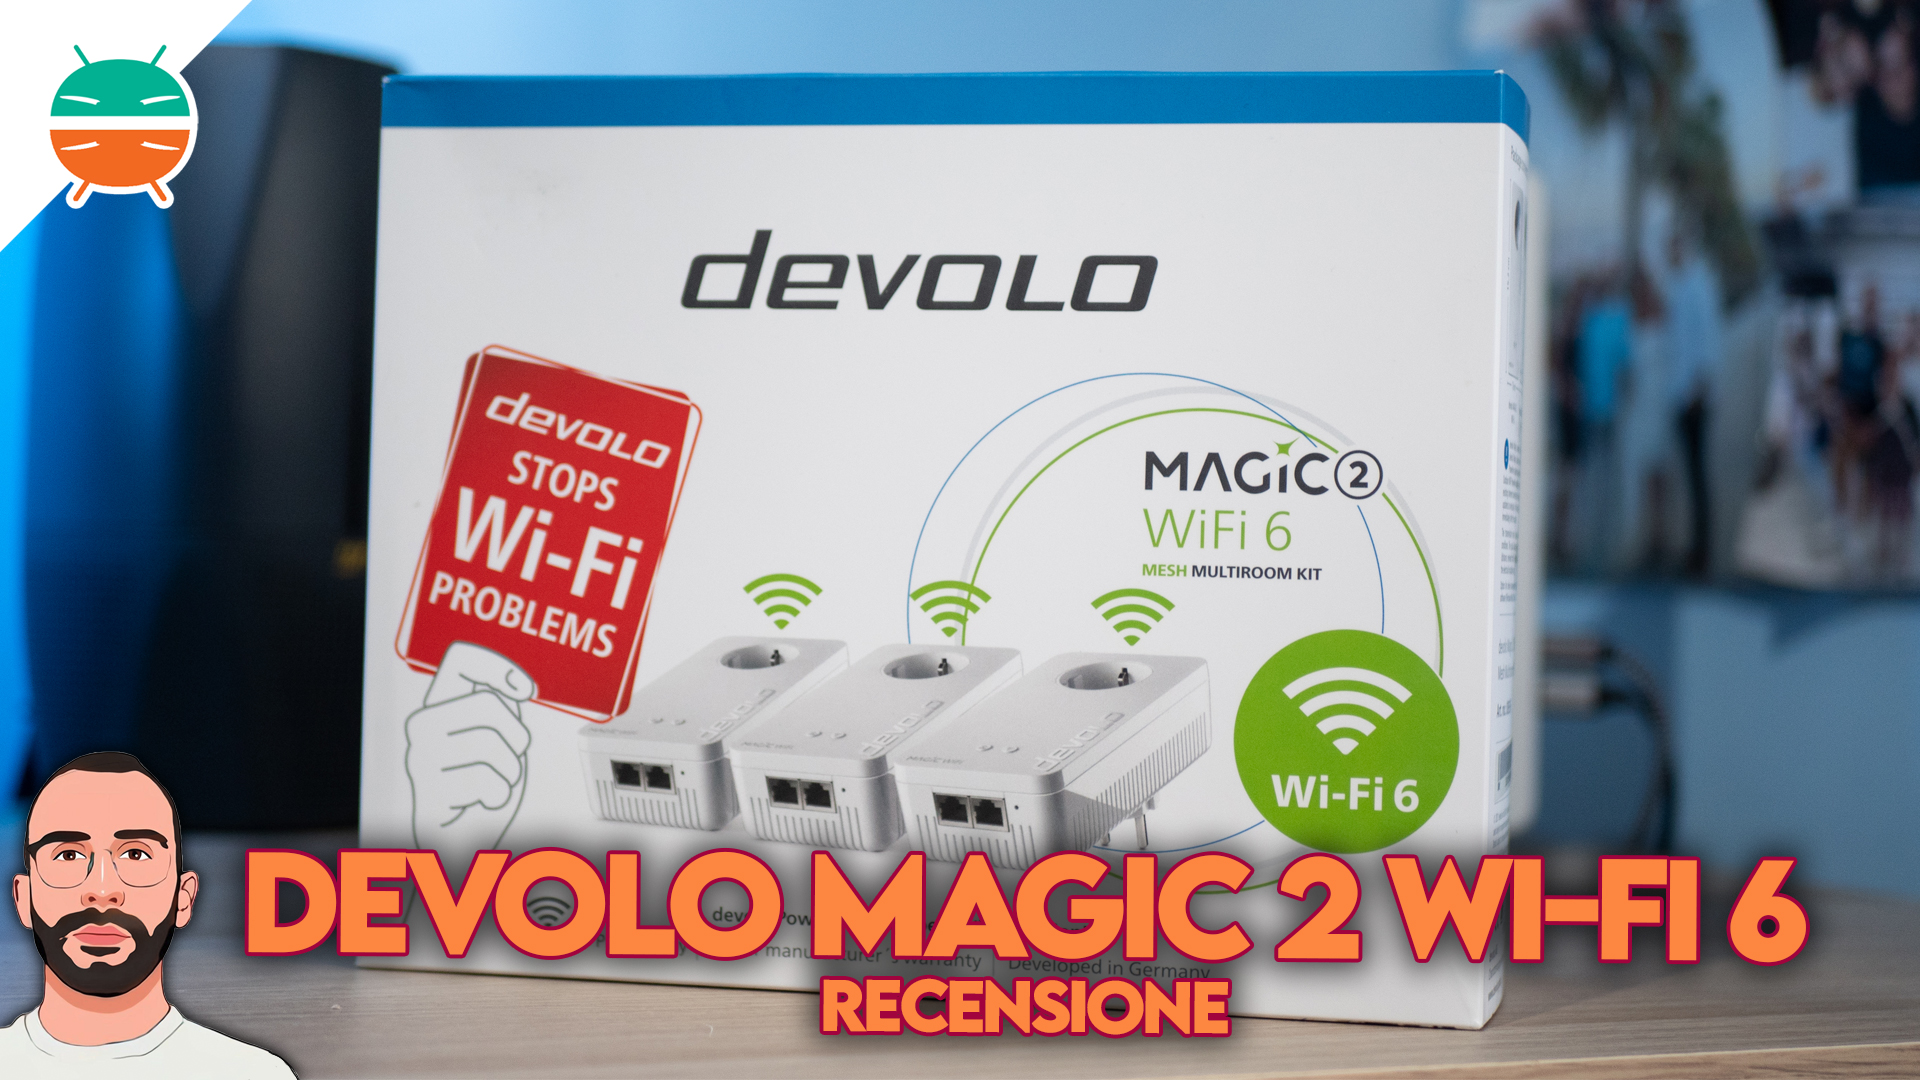 Cpl wifi magic 2 mesh wifi 6 Devolo